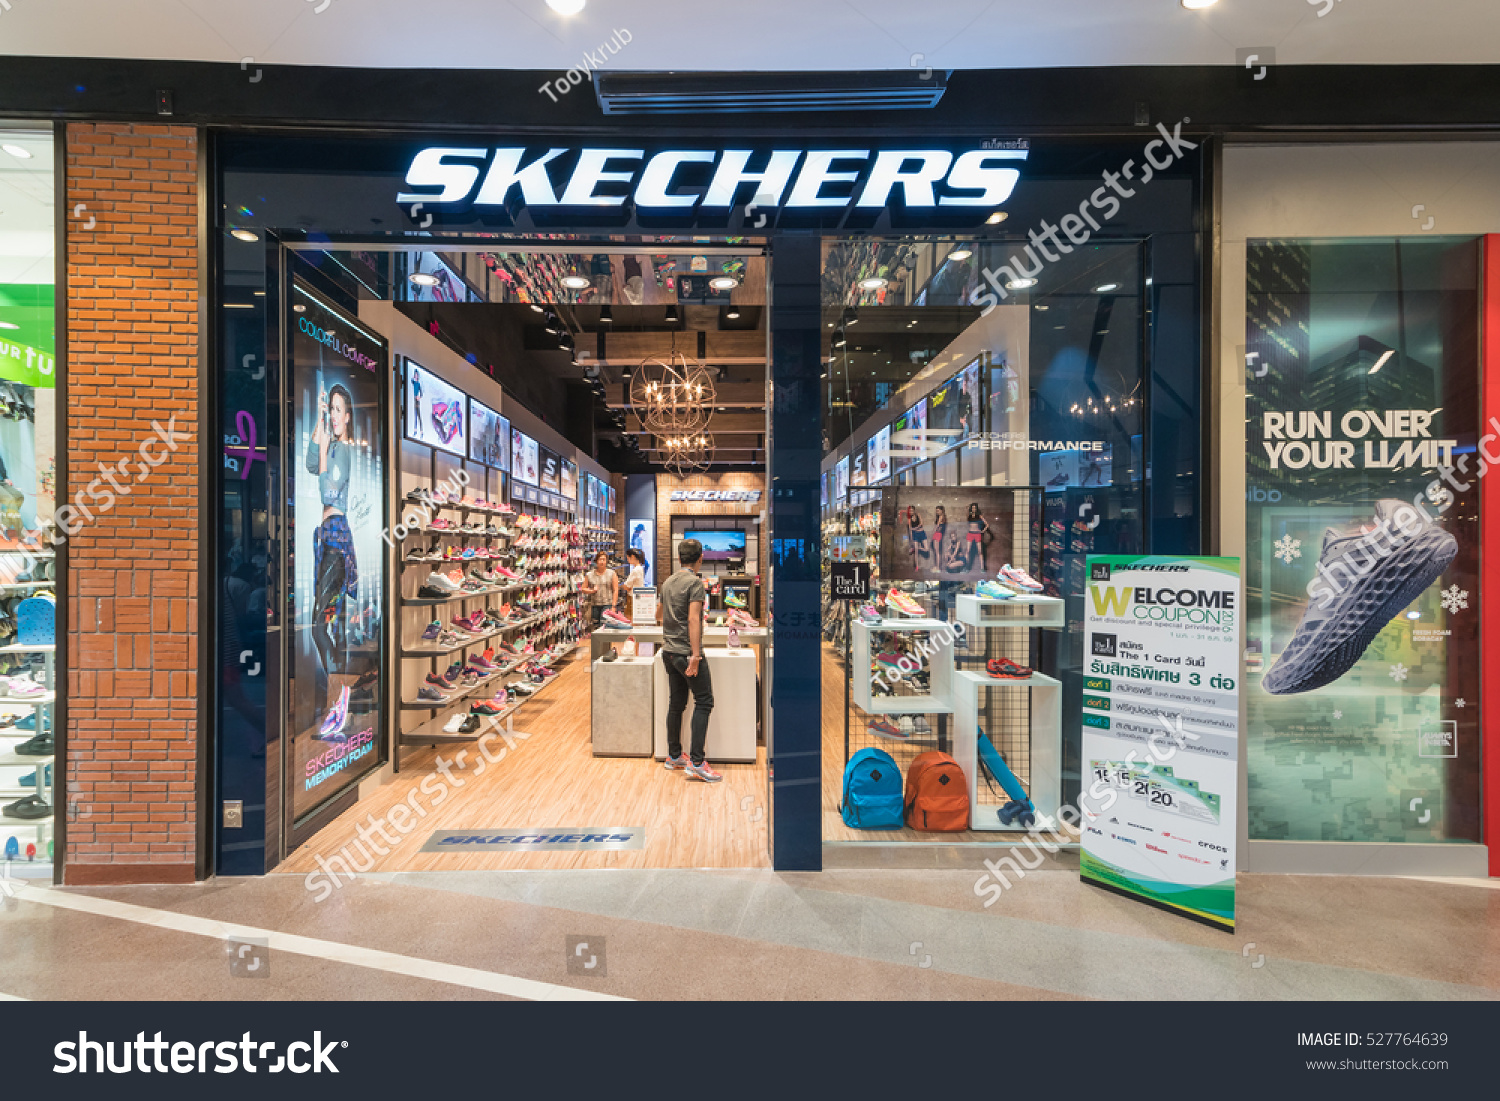 where to buy skechers in bangkok